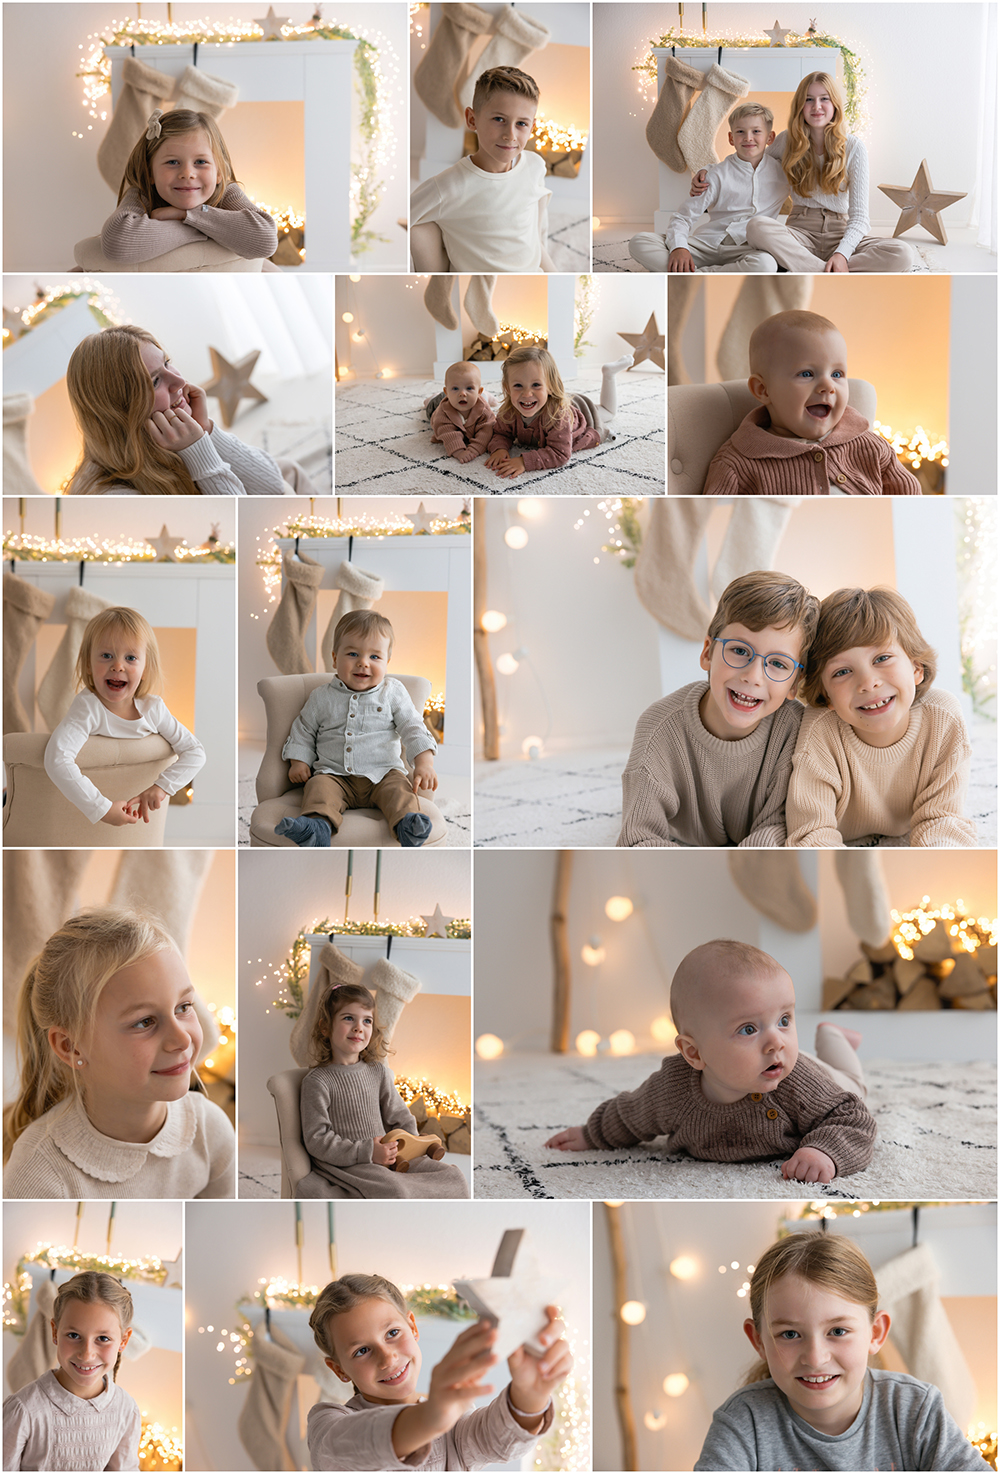 Britta-Passmann-Fotografie-Dortmund-Neugeborenenfotos-Newbornfotos-Babyfotos-Fotoshooting-Weihnachtsfotos